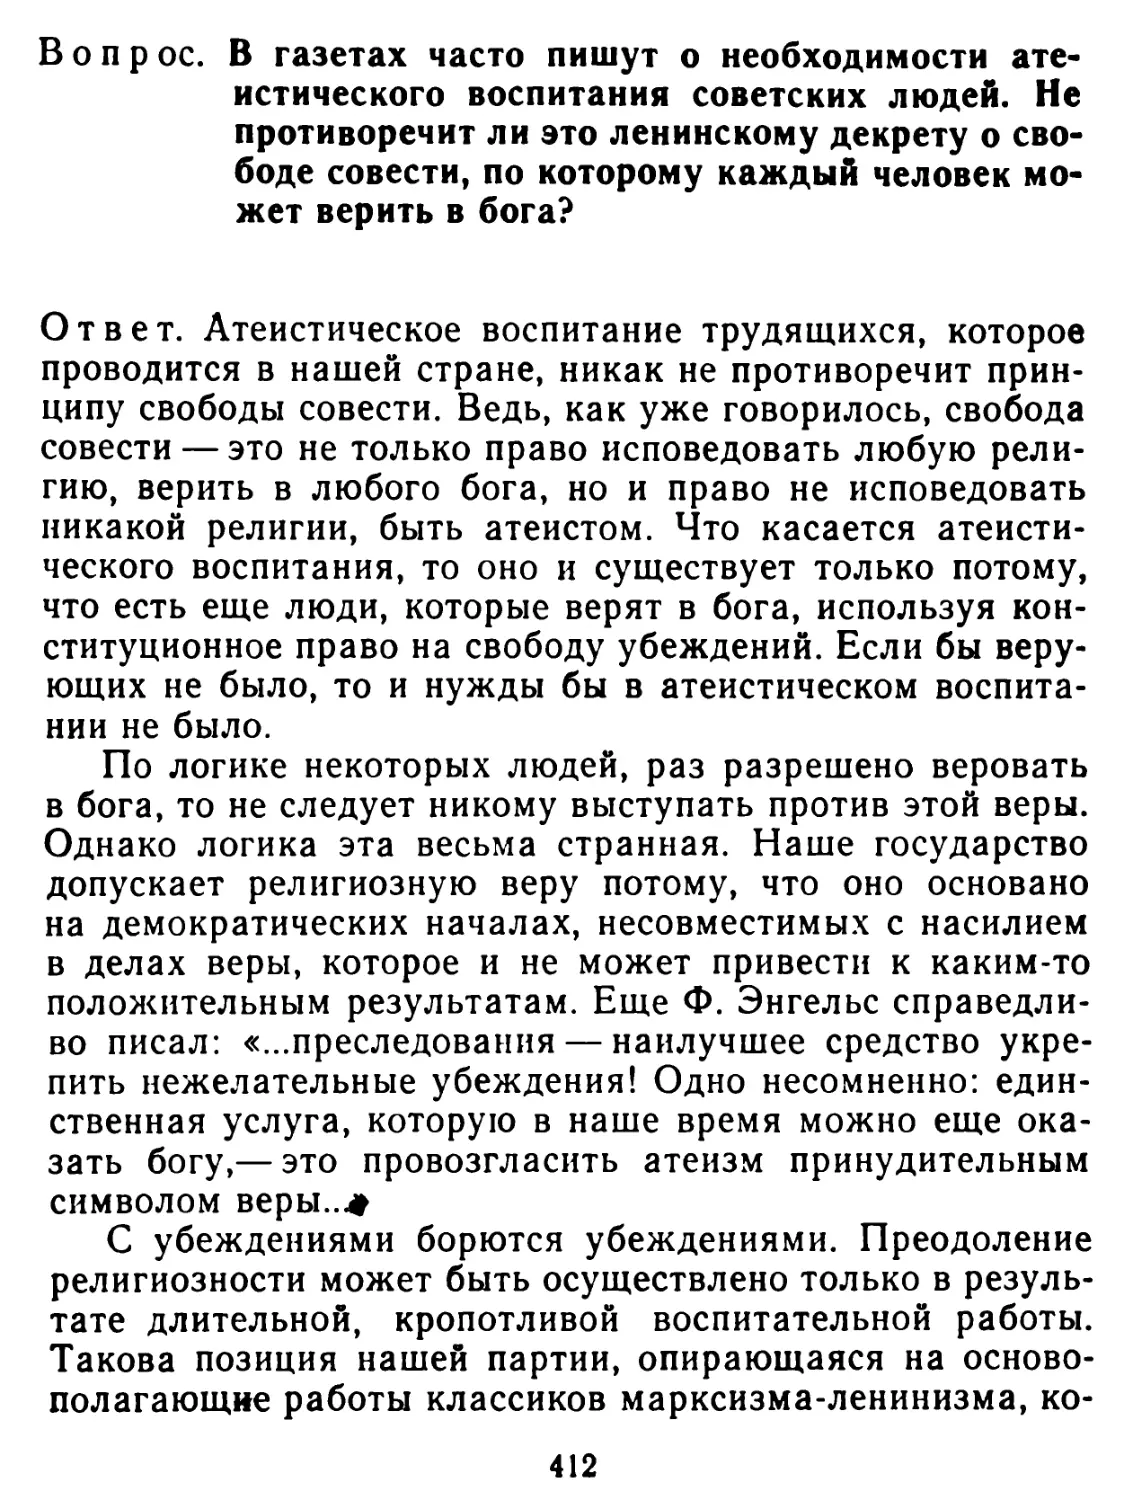 В газетах часто пишут о необходимости атеистического воспитания советских людей. Не противоречит ли это ленинскому декрету о свободе совести, по которому каждый человек может верить в бога